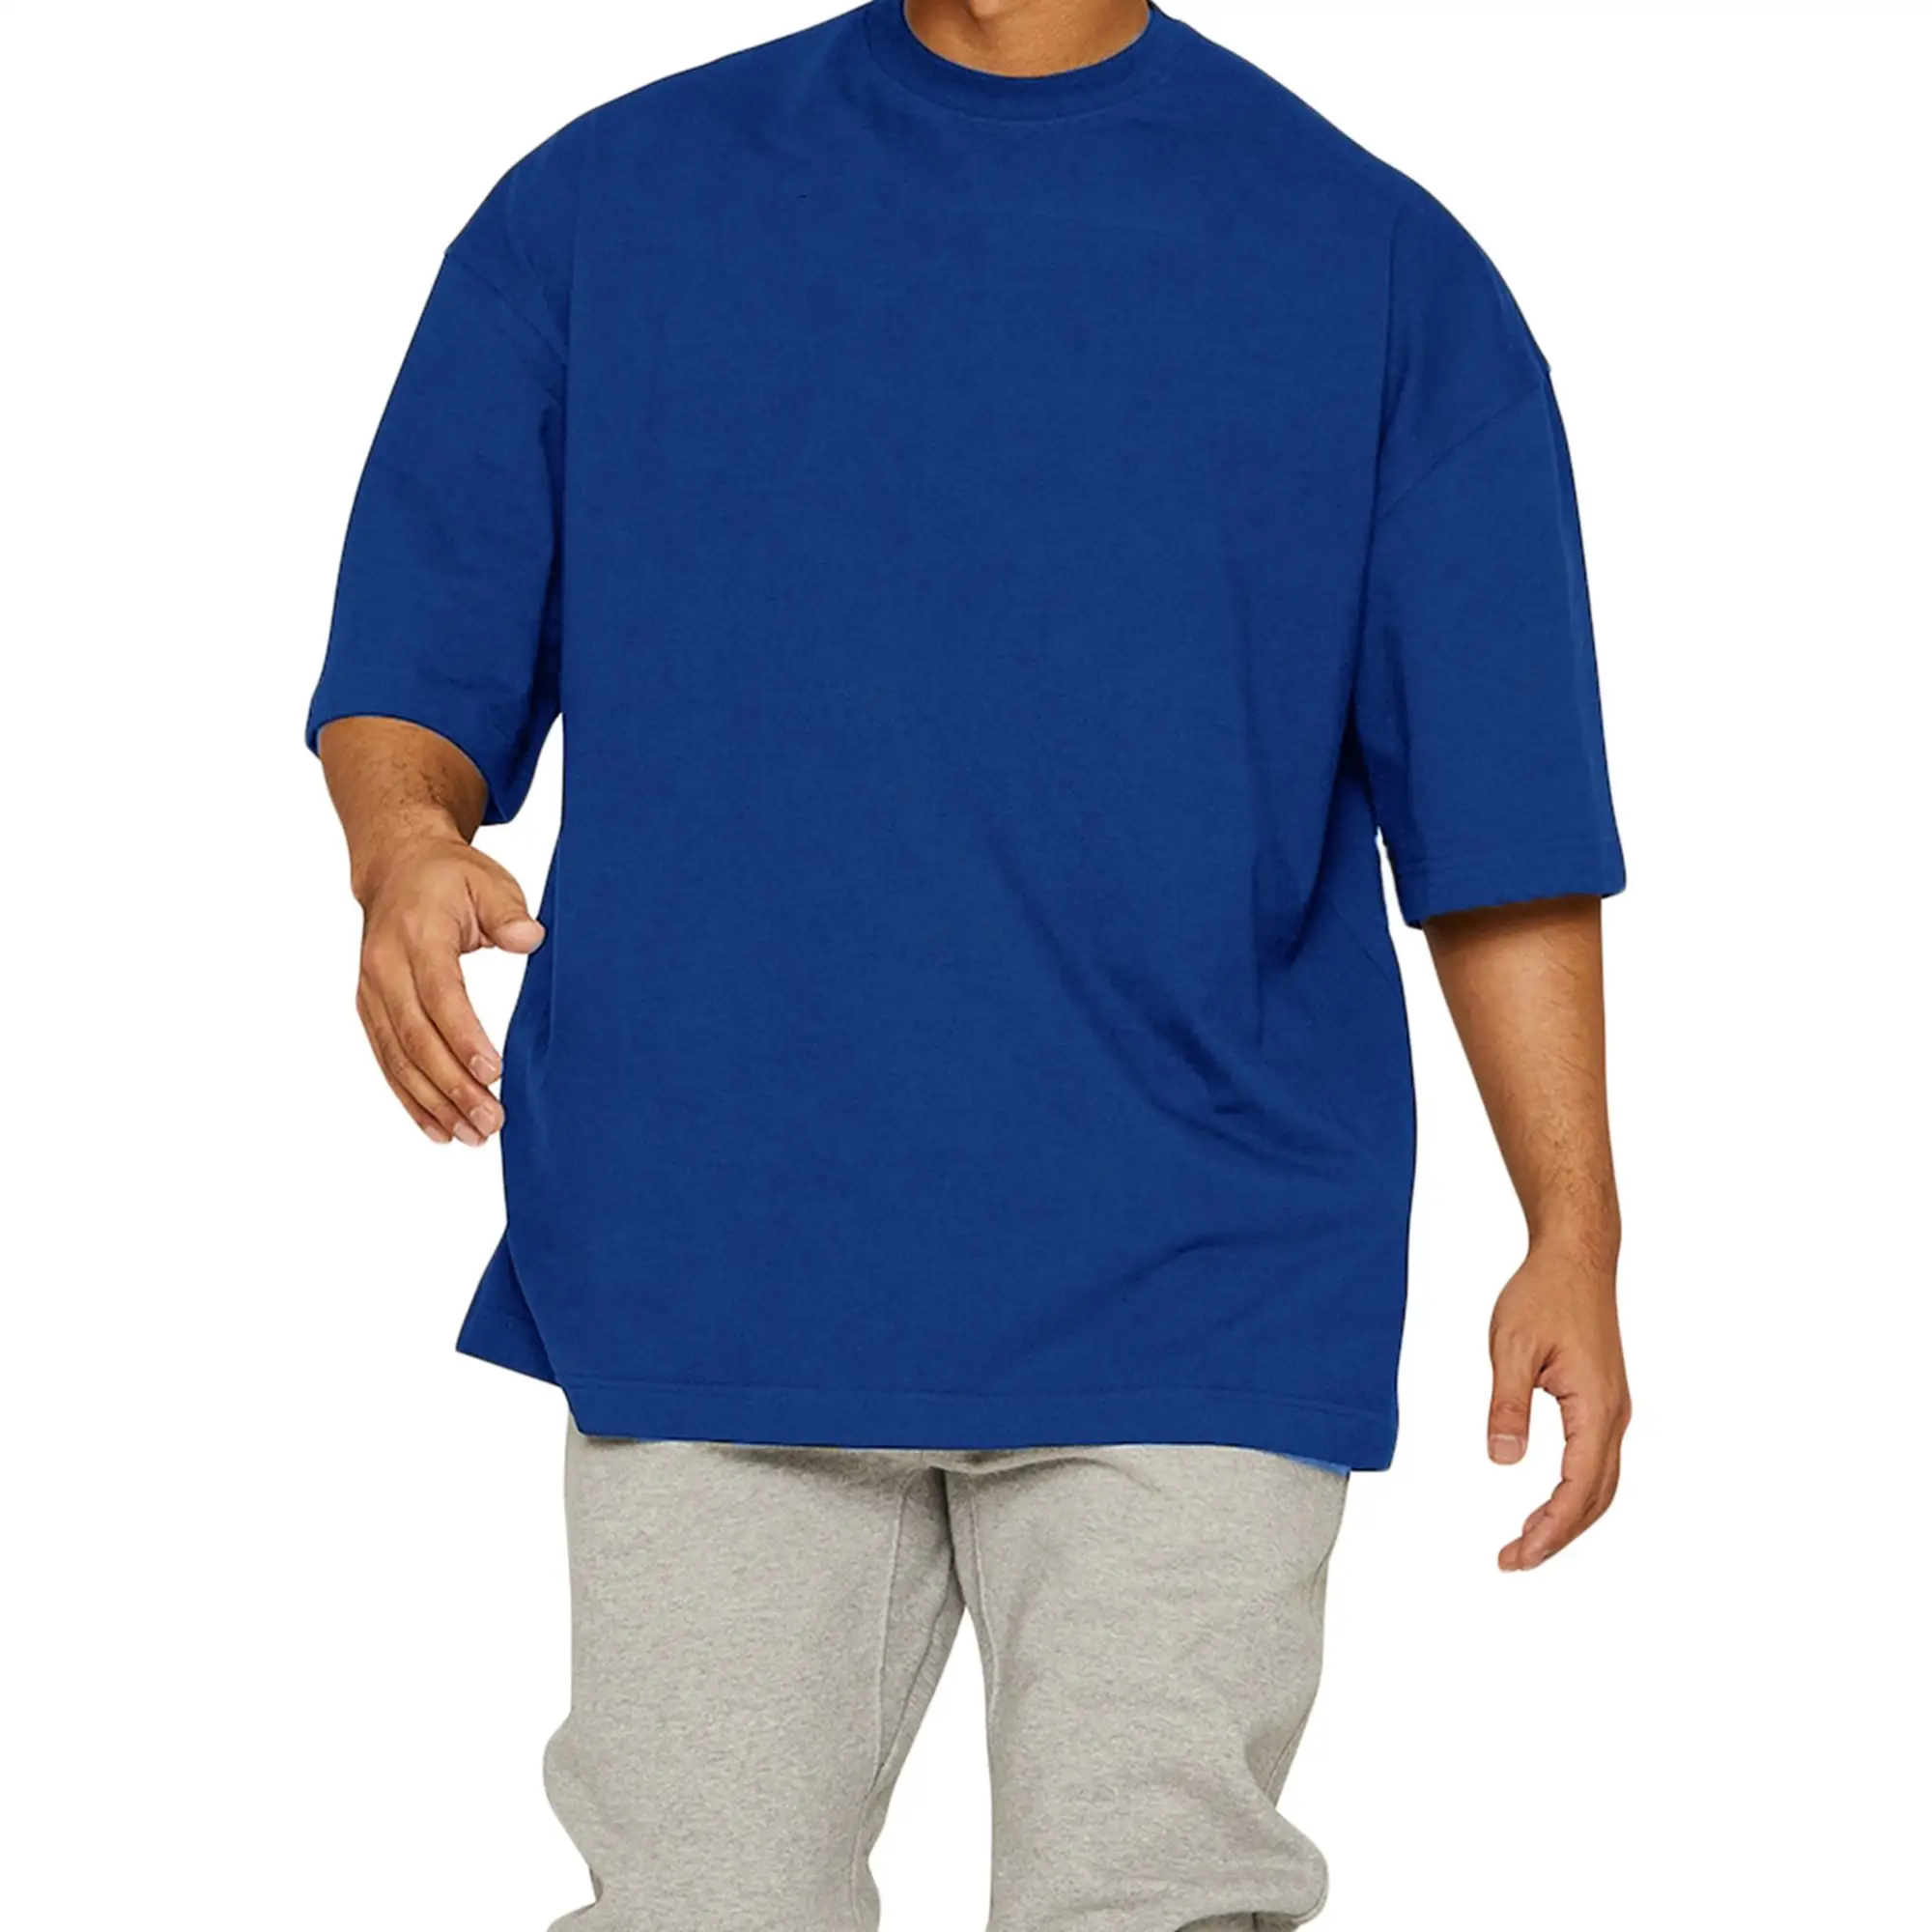 Kaus sablon longgar logo kustom kaus ukuran besar pria gaya baru kaus lembut kerah tiruan cepat kering